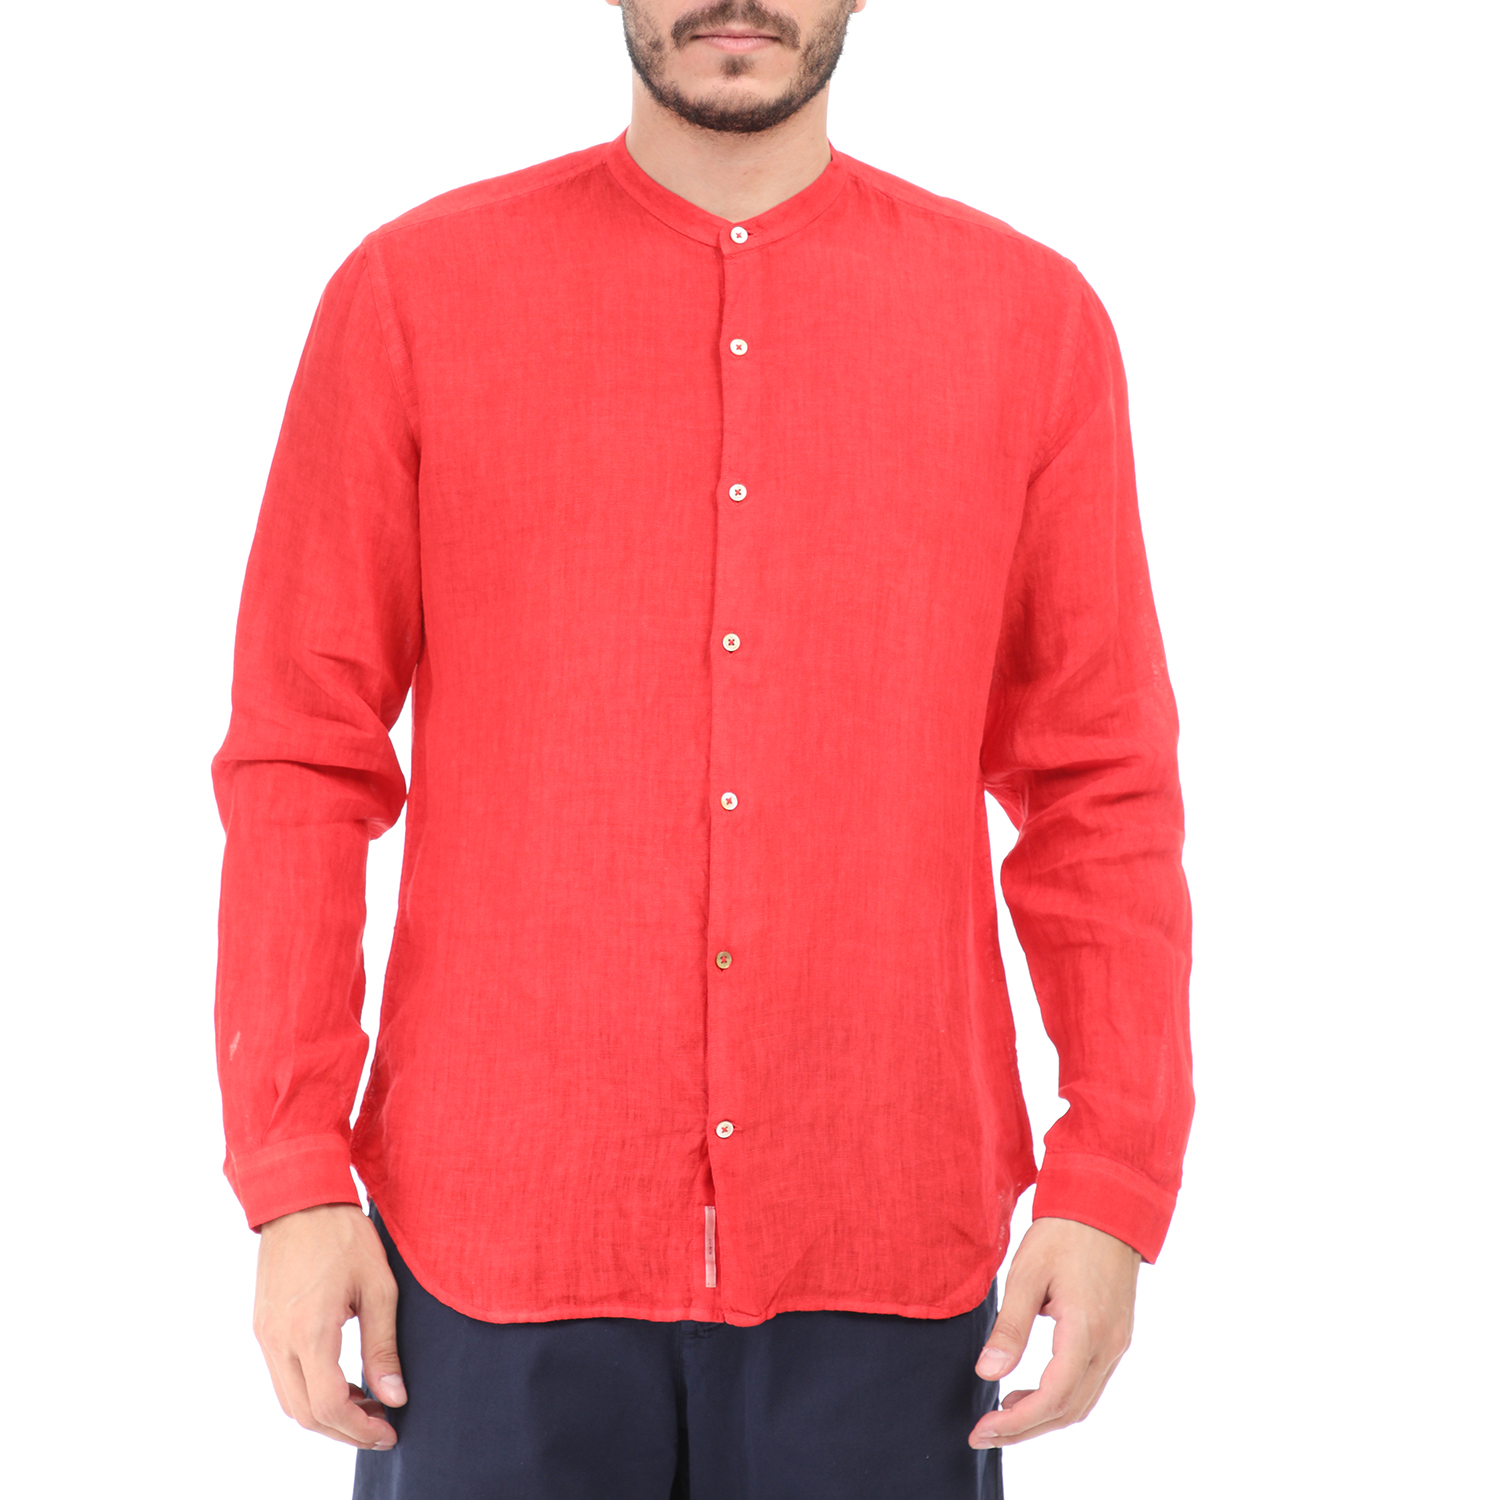 Ανδρικά/Ρούχα/Πουκάμισα/Μακρυμάνικα BROOKSFIELD - Ανδρικό πουκάμισο BROOKSFIELD κόκκινο